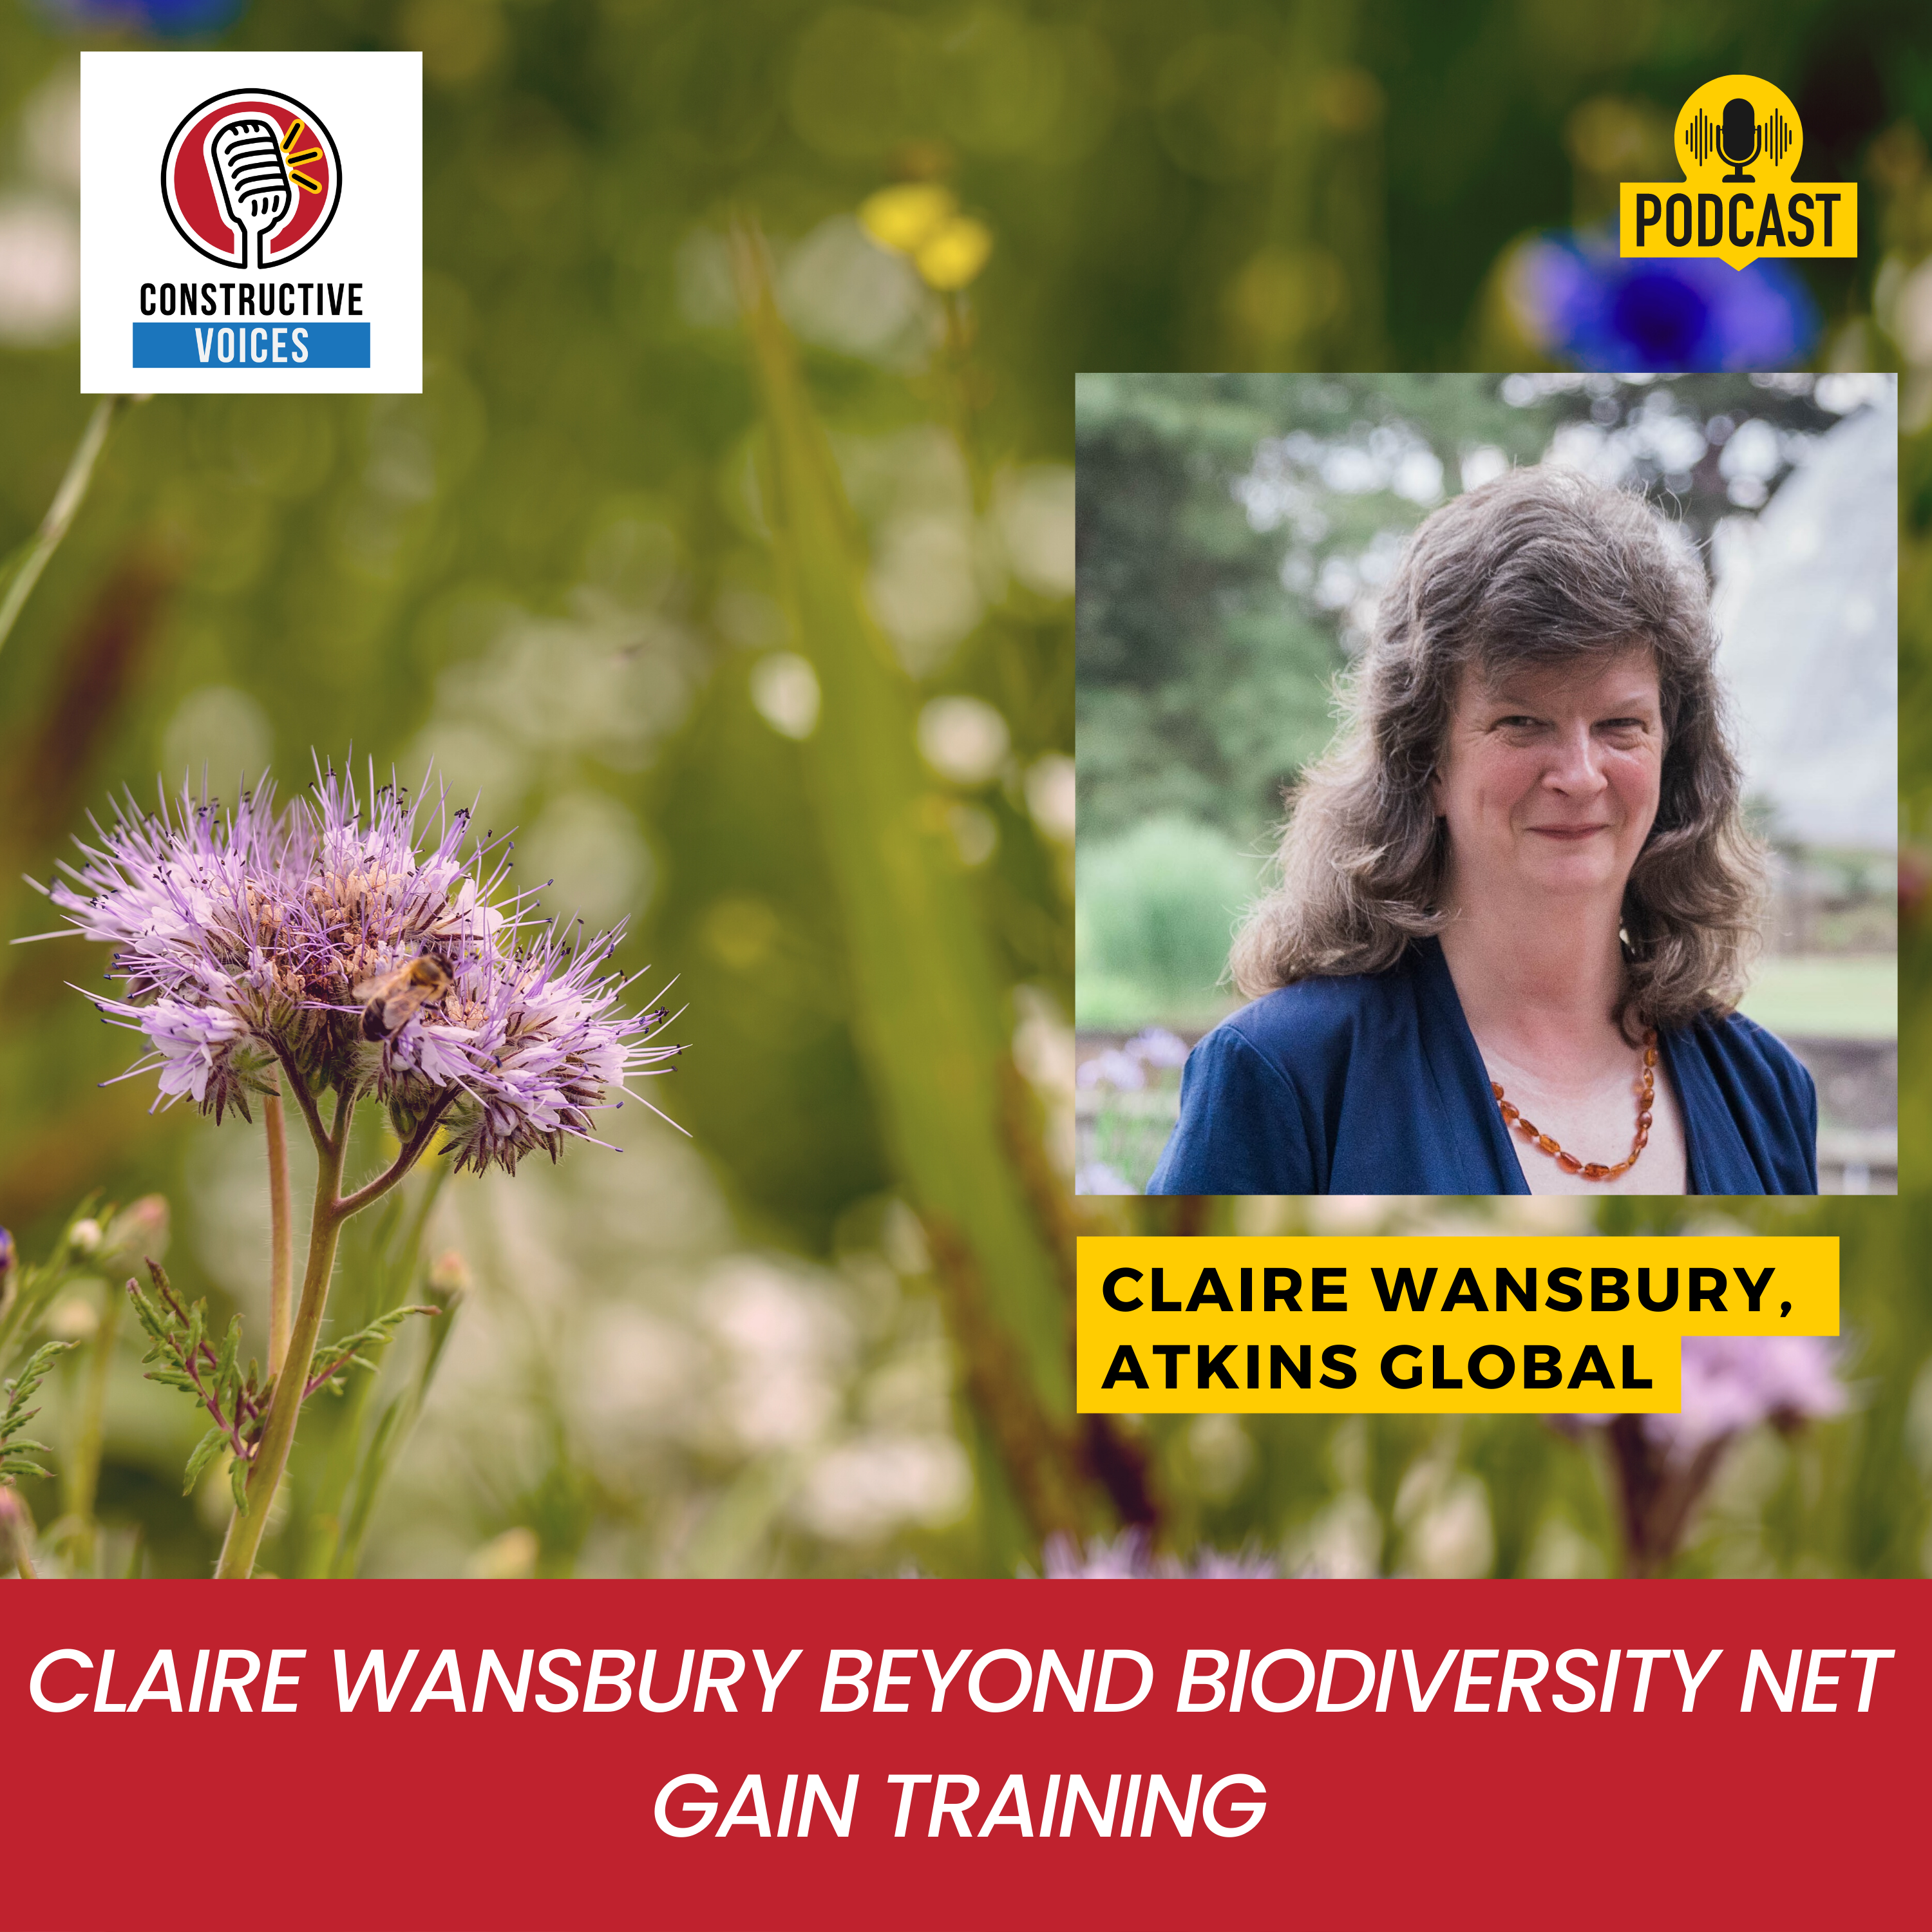 Claire Wansbury Beyond Biodiversity Net Gain Training